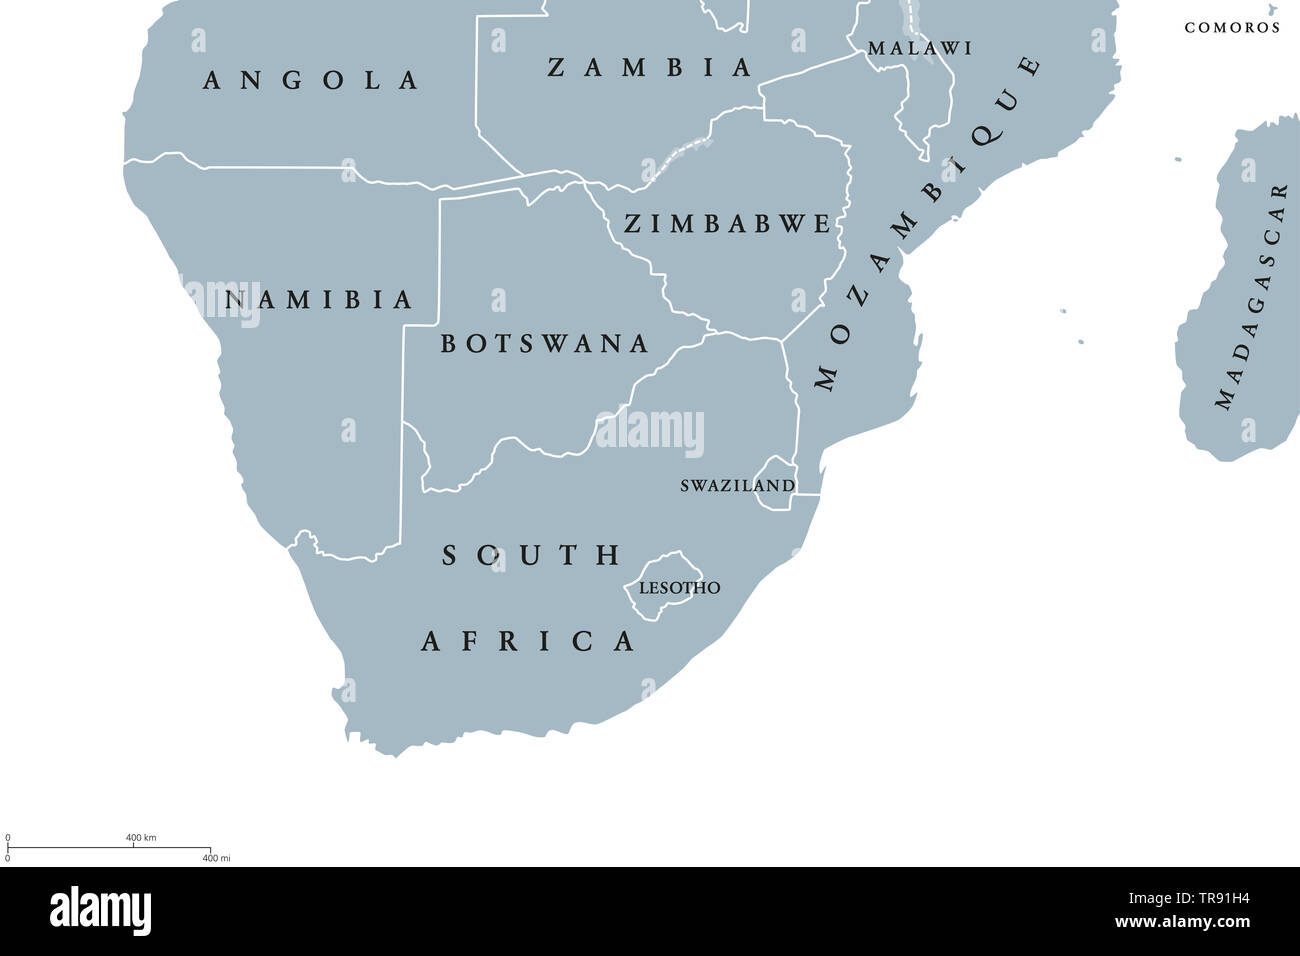 Region des südlichen Afrika politische Karte. Die südlichste Region des afrikanischen Kontinents. Südafrika, Namibia, Botswana, Swaziland und Lesotho. Englisch. Stockfoto